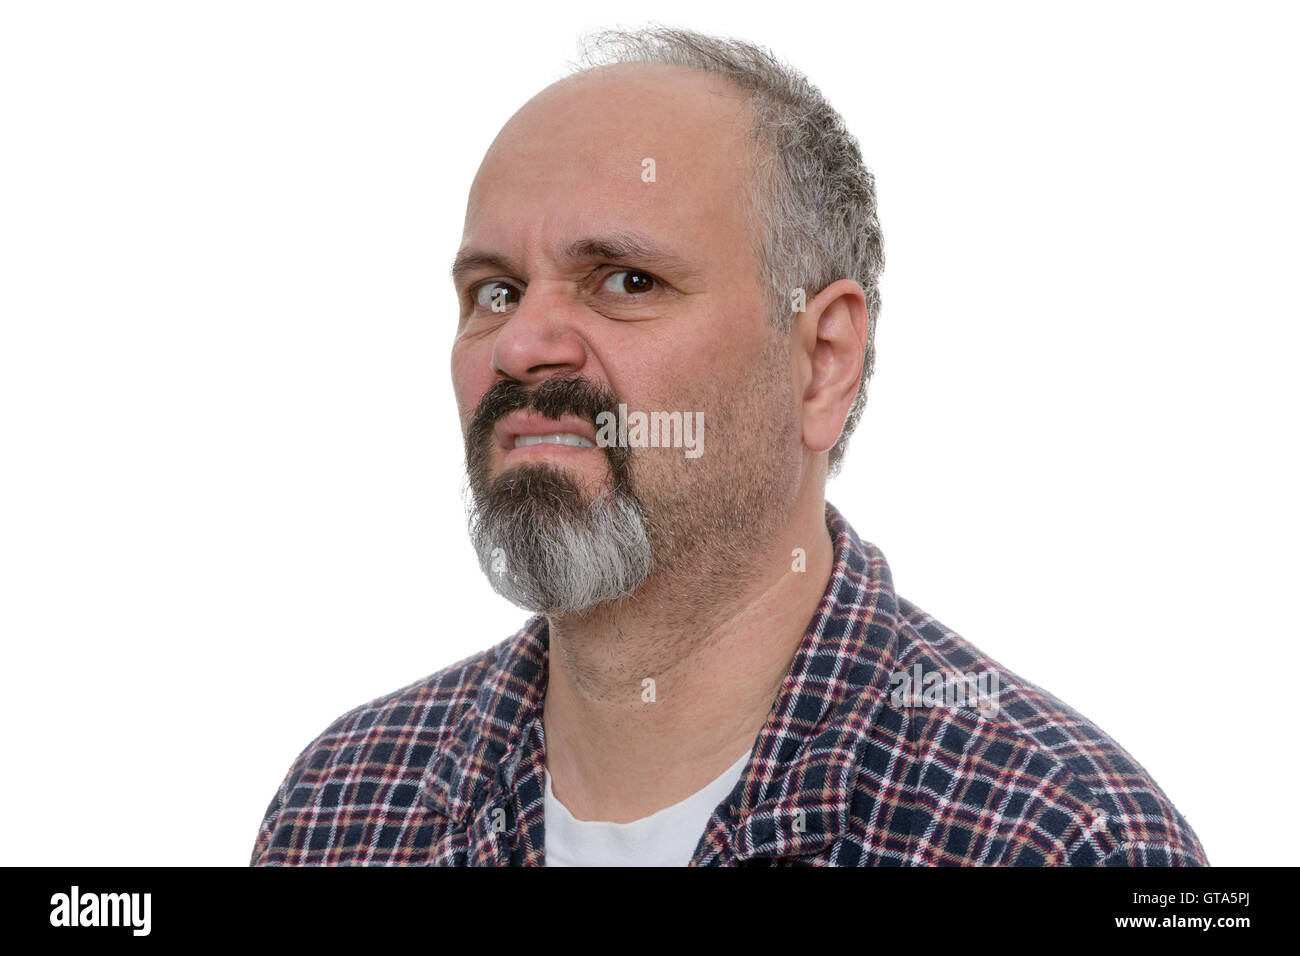 Verärgerte Glatze Mann mit Bart mokiert in die Kamera während des Tragens karierten Hemd Stockfoto